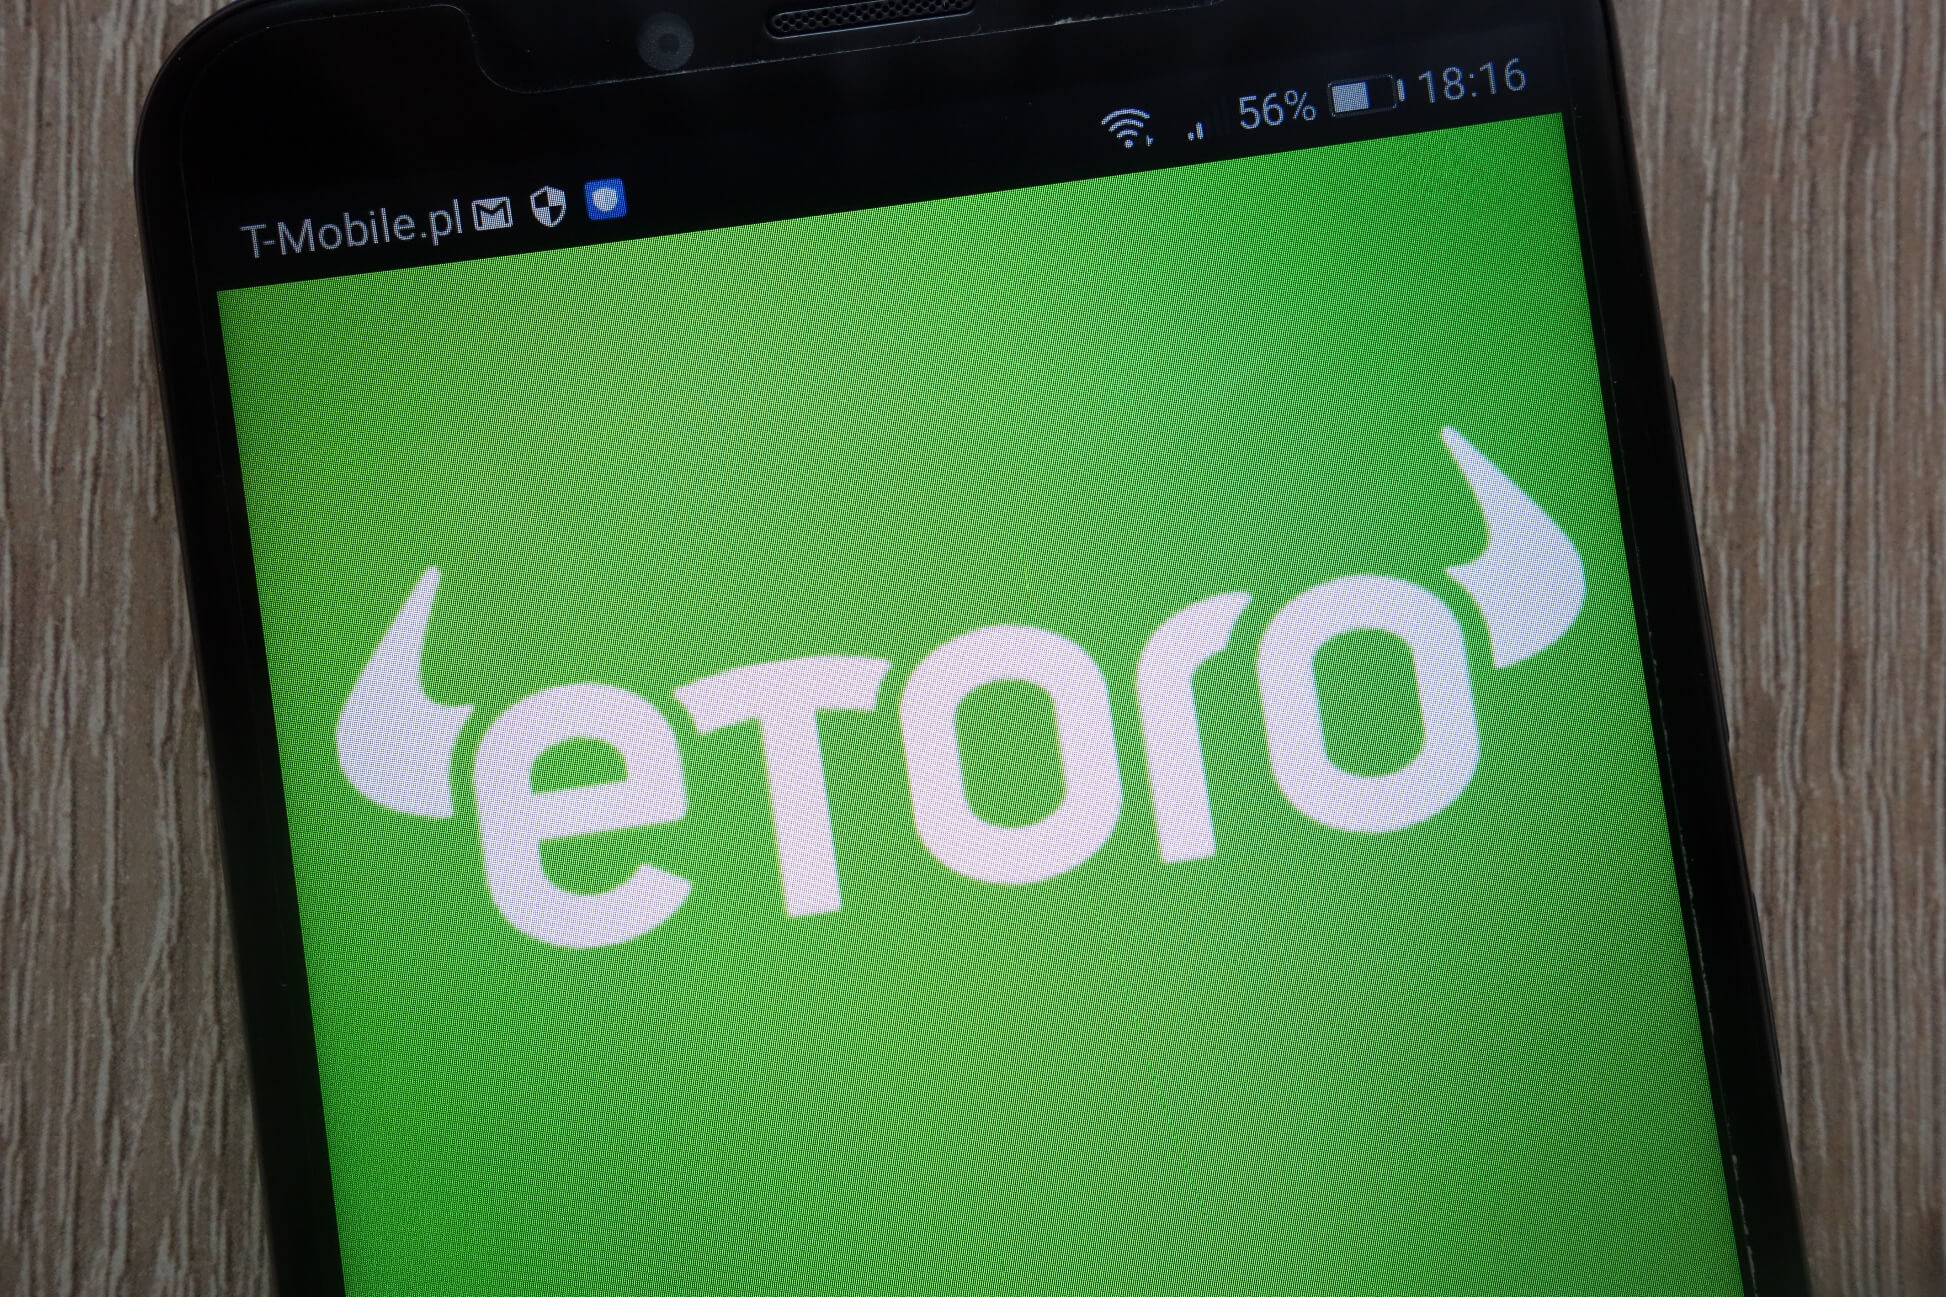 Οι δικηγόροι ισχυρίζονται ότι σκοπεύουν να υποβάλουν πρόταση για ανάκληση της άδειας του eToro αυτήν την εβδομάδα